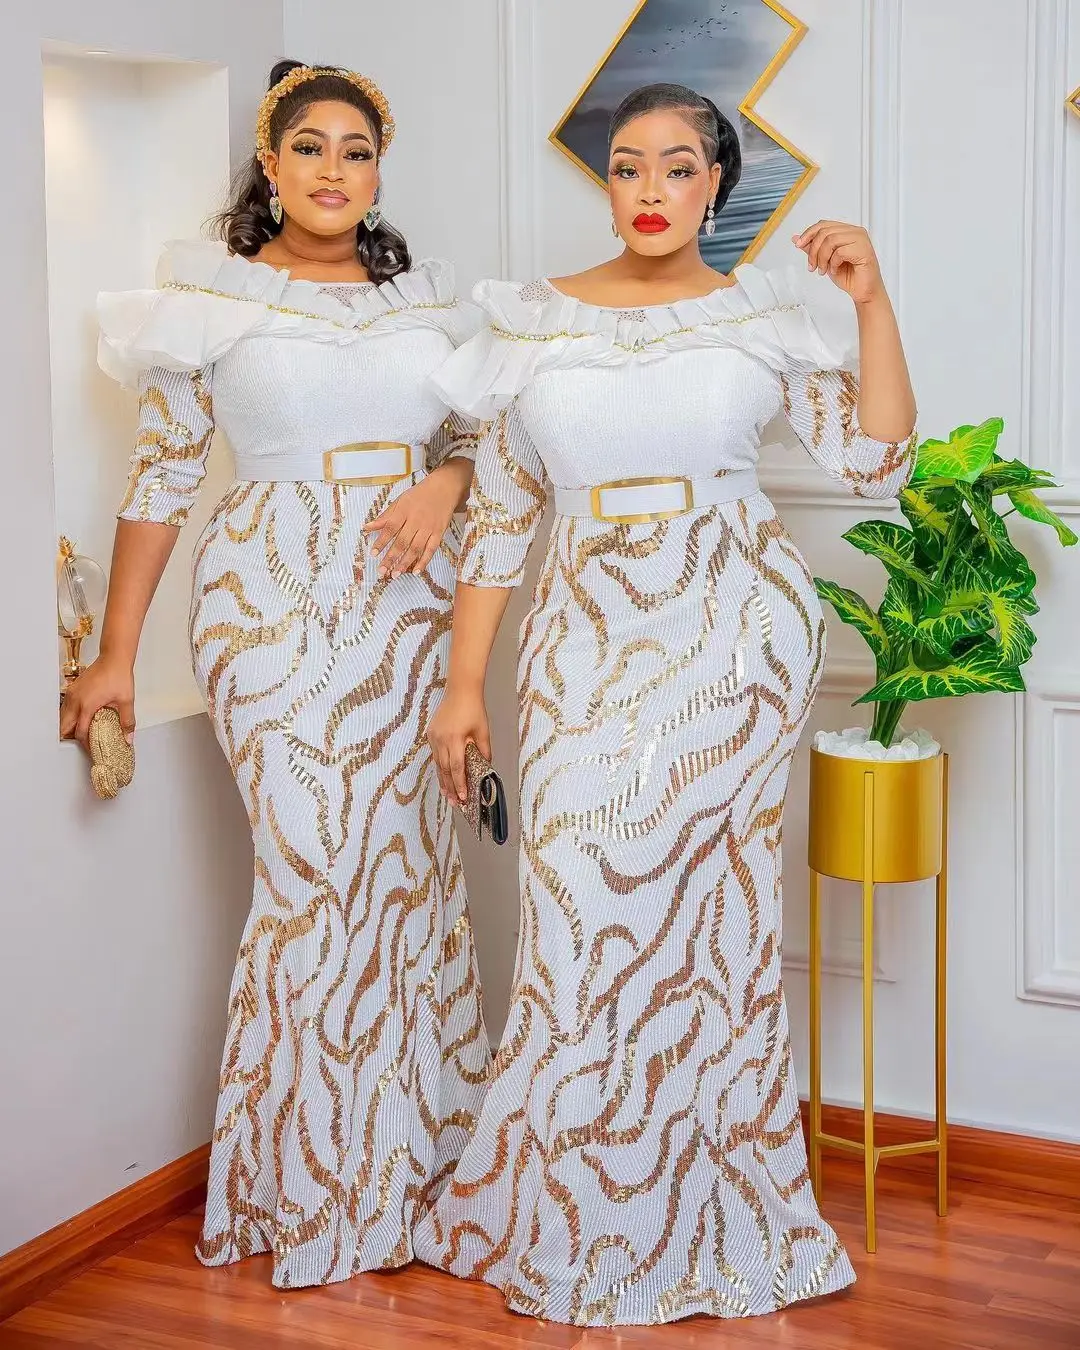 para mujeres – Compra trajes africanos para mujeres con envío gratis en AliExpress